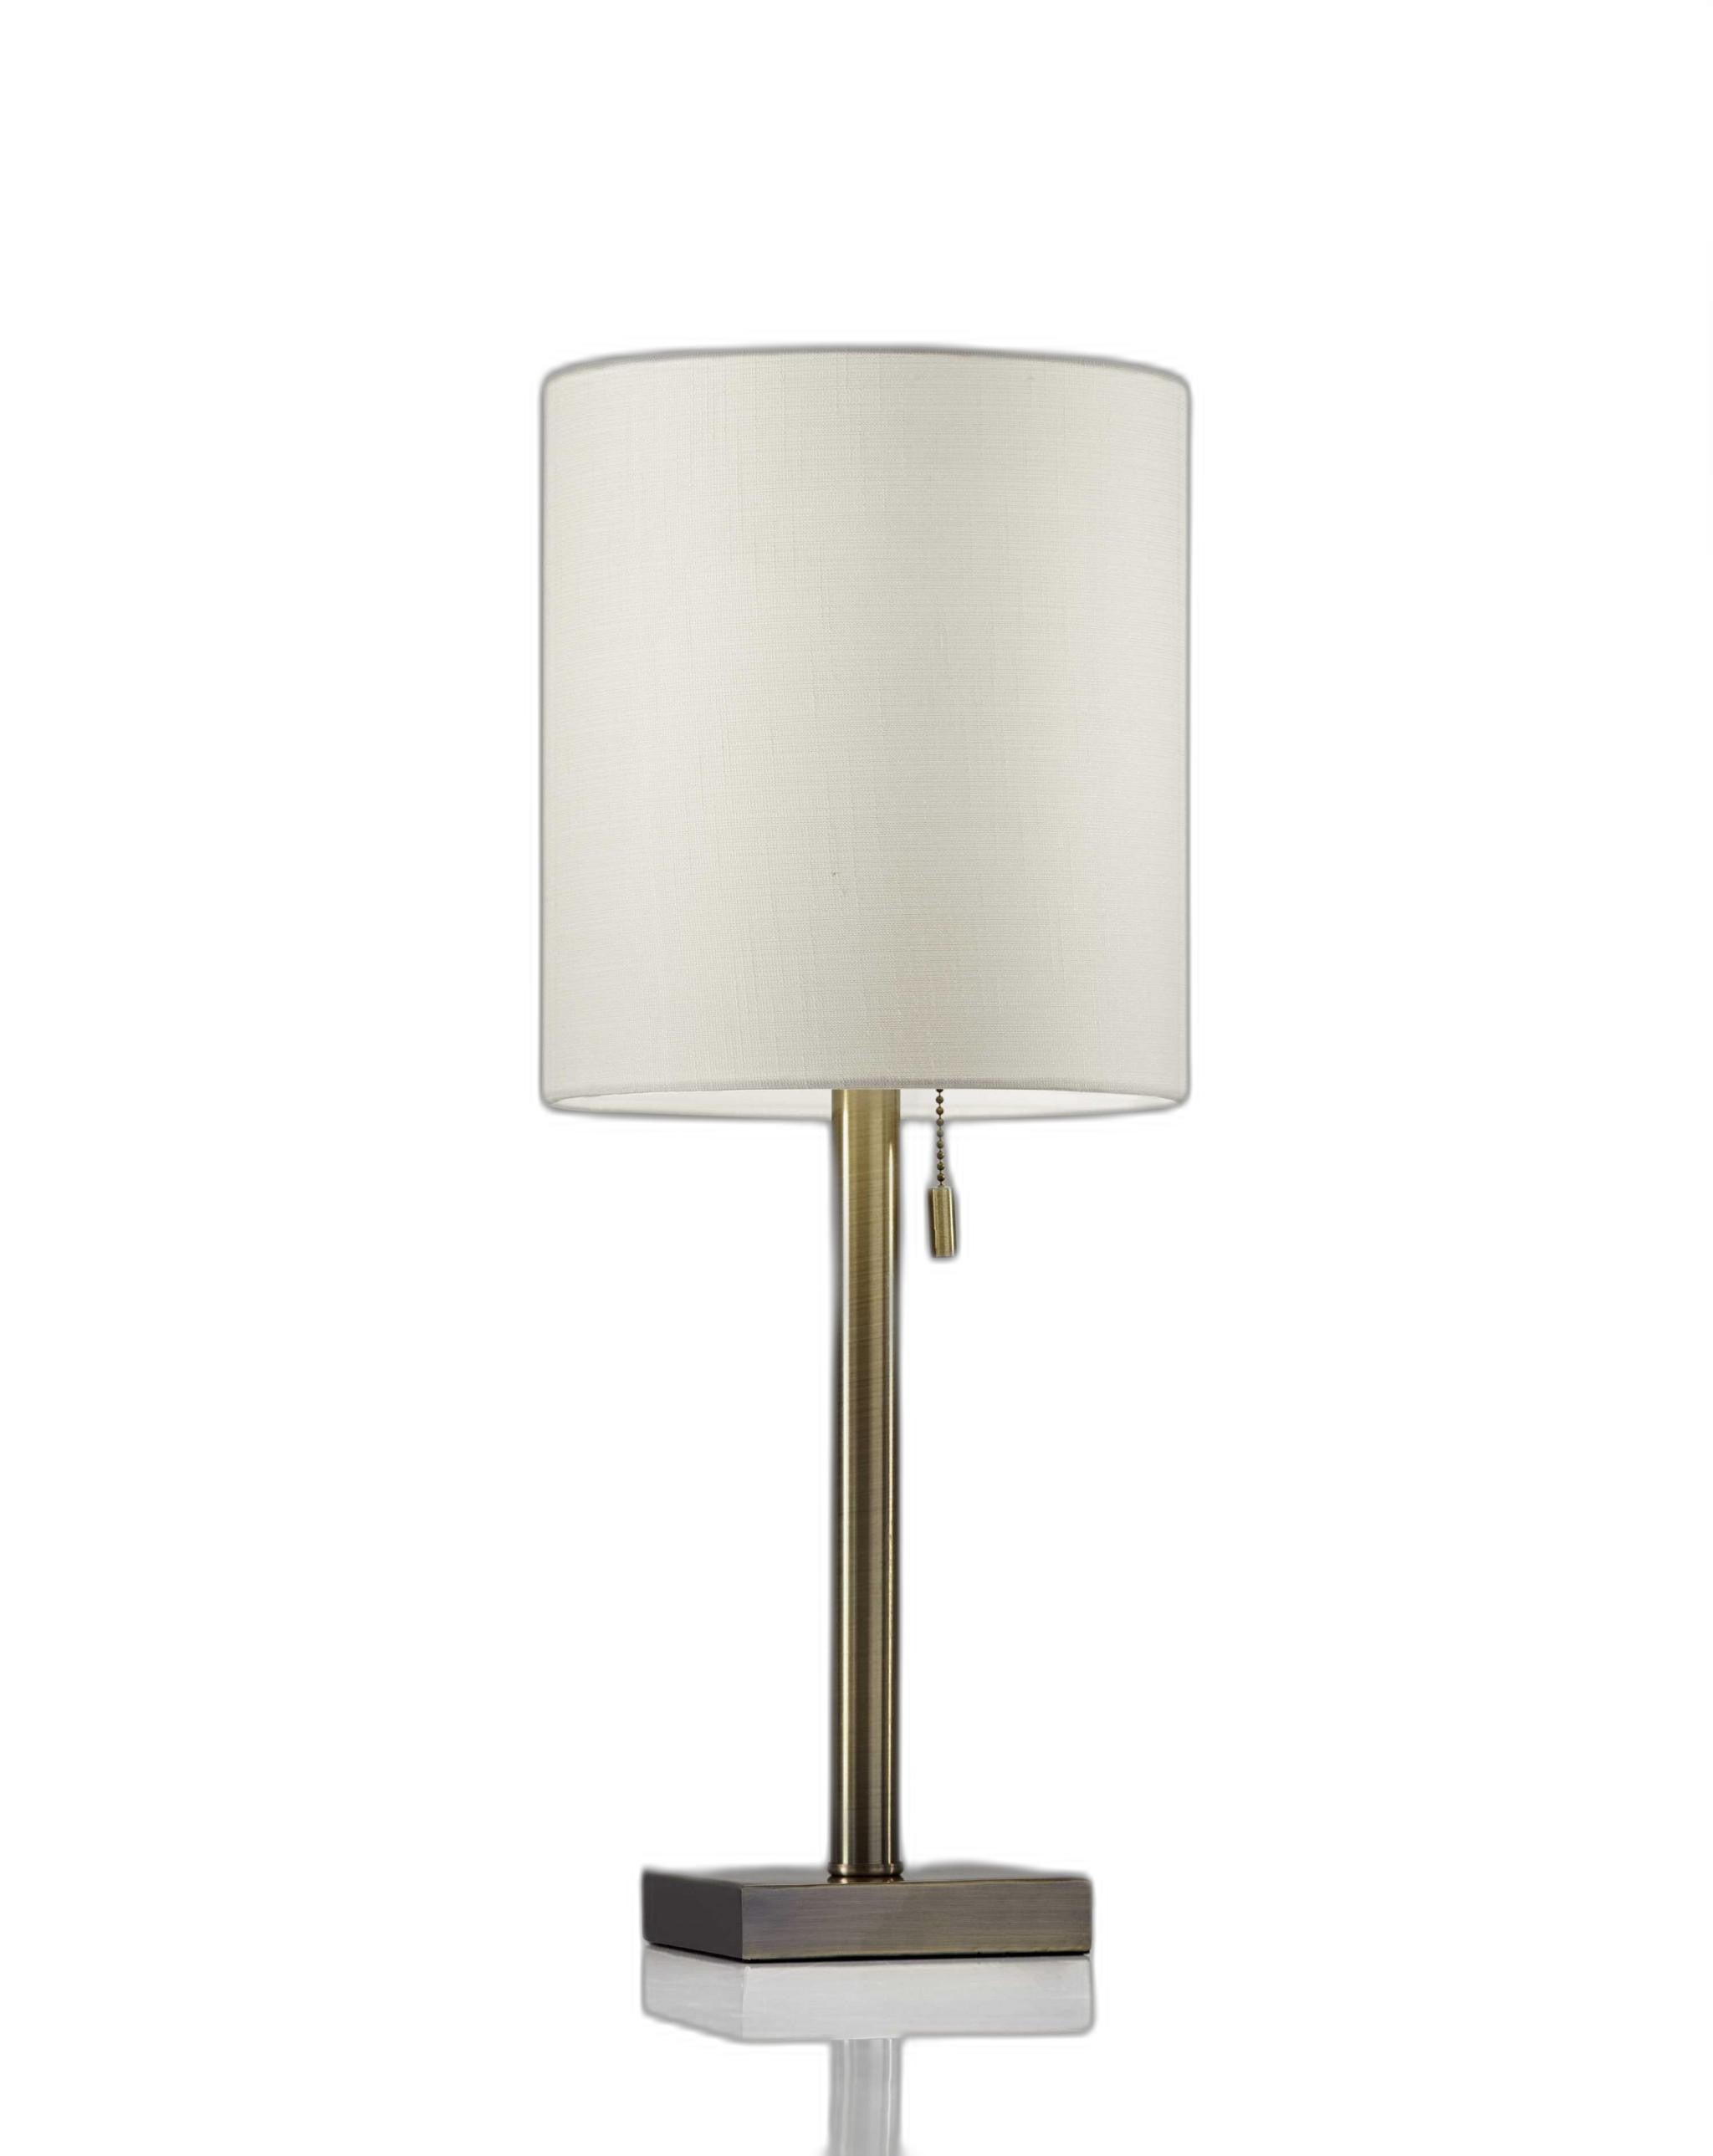 Dark Bronze Metal Table Lamp